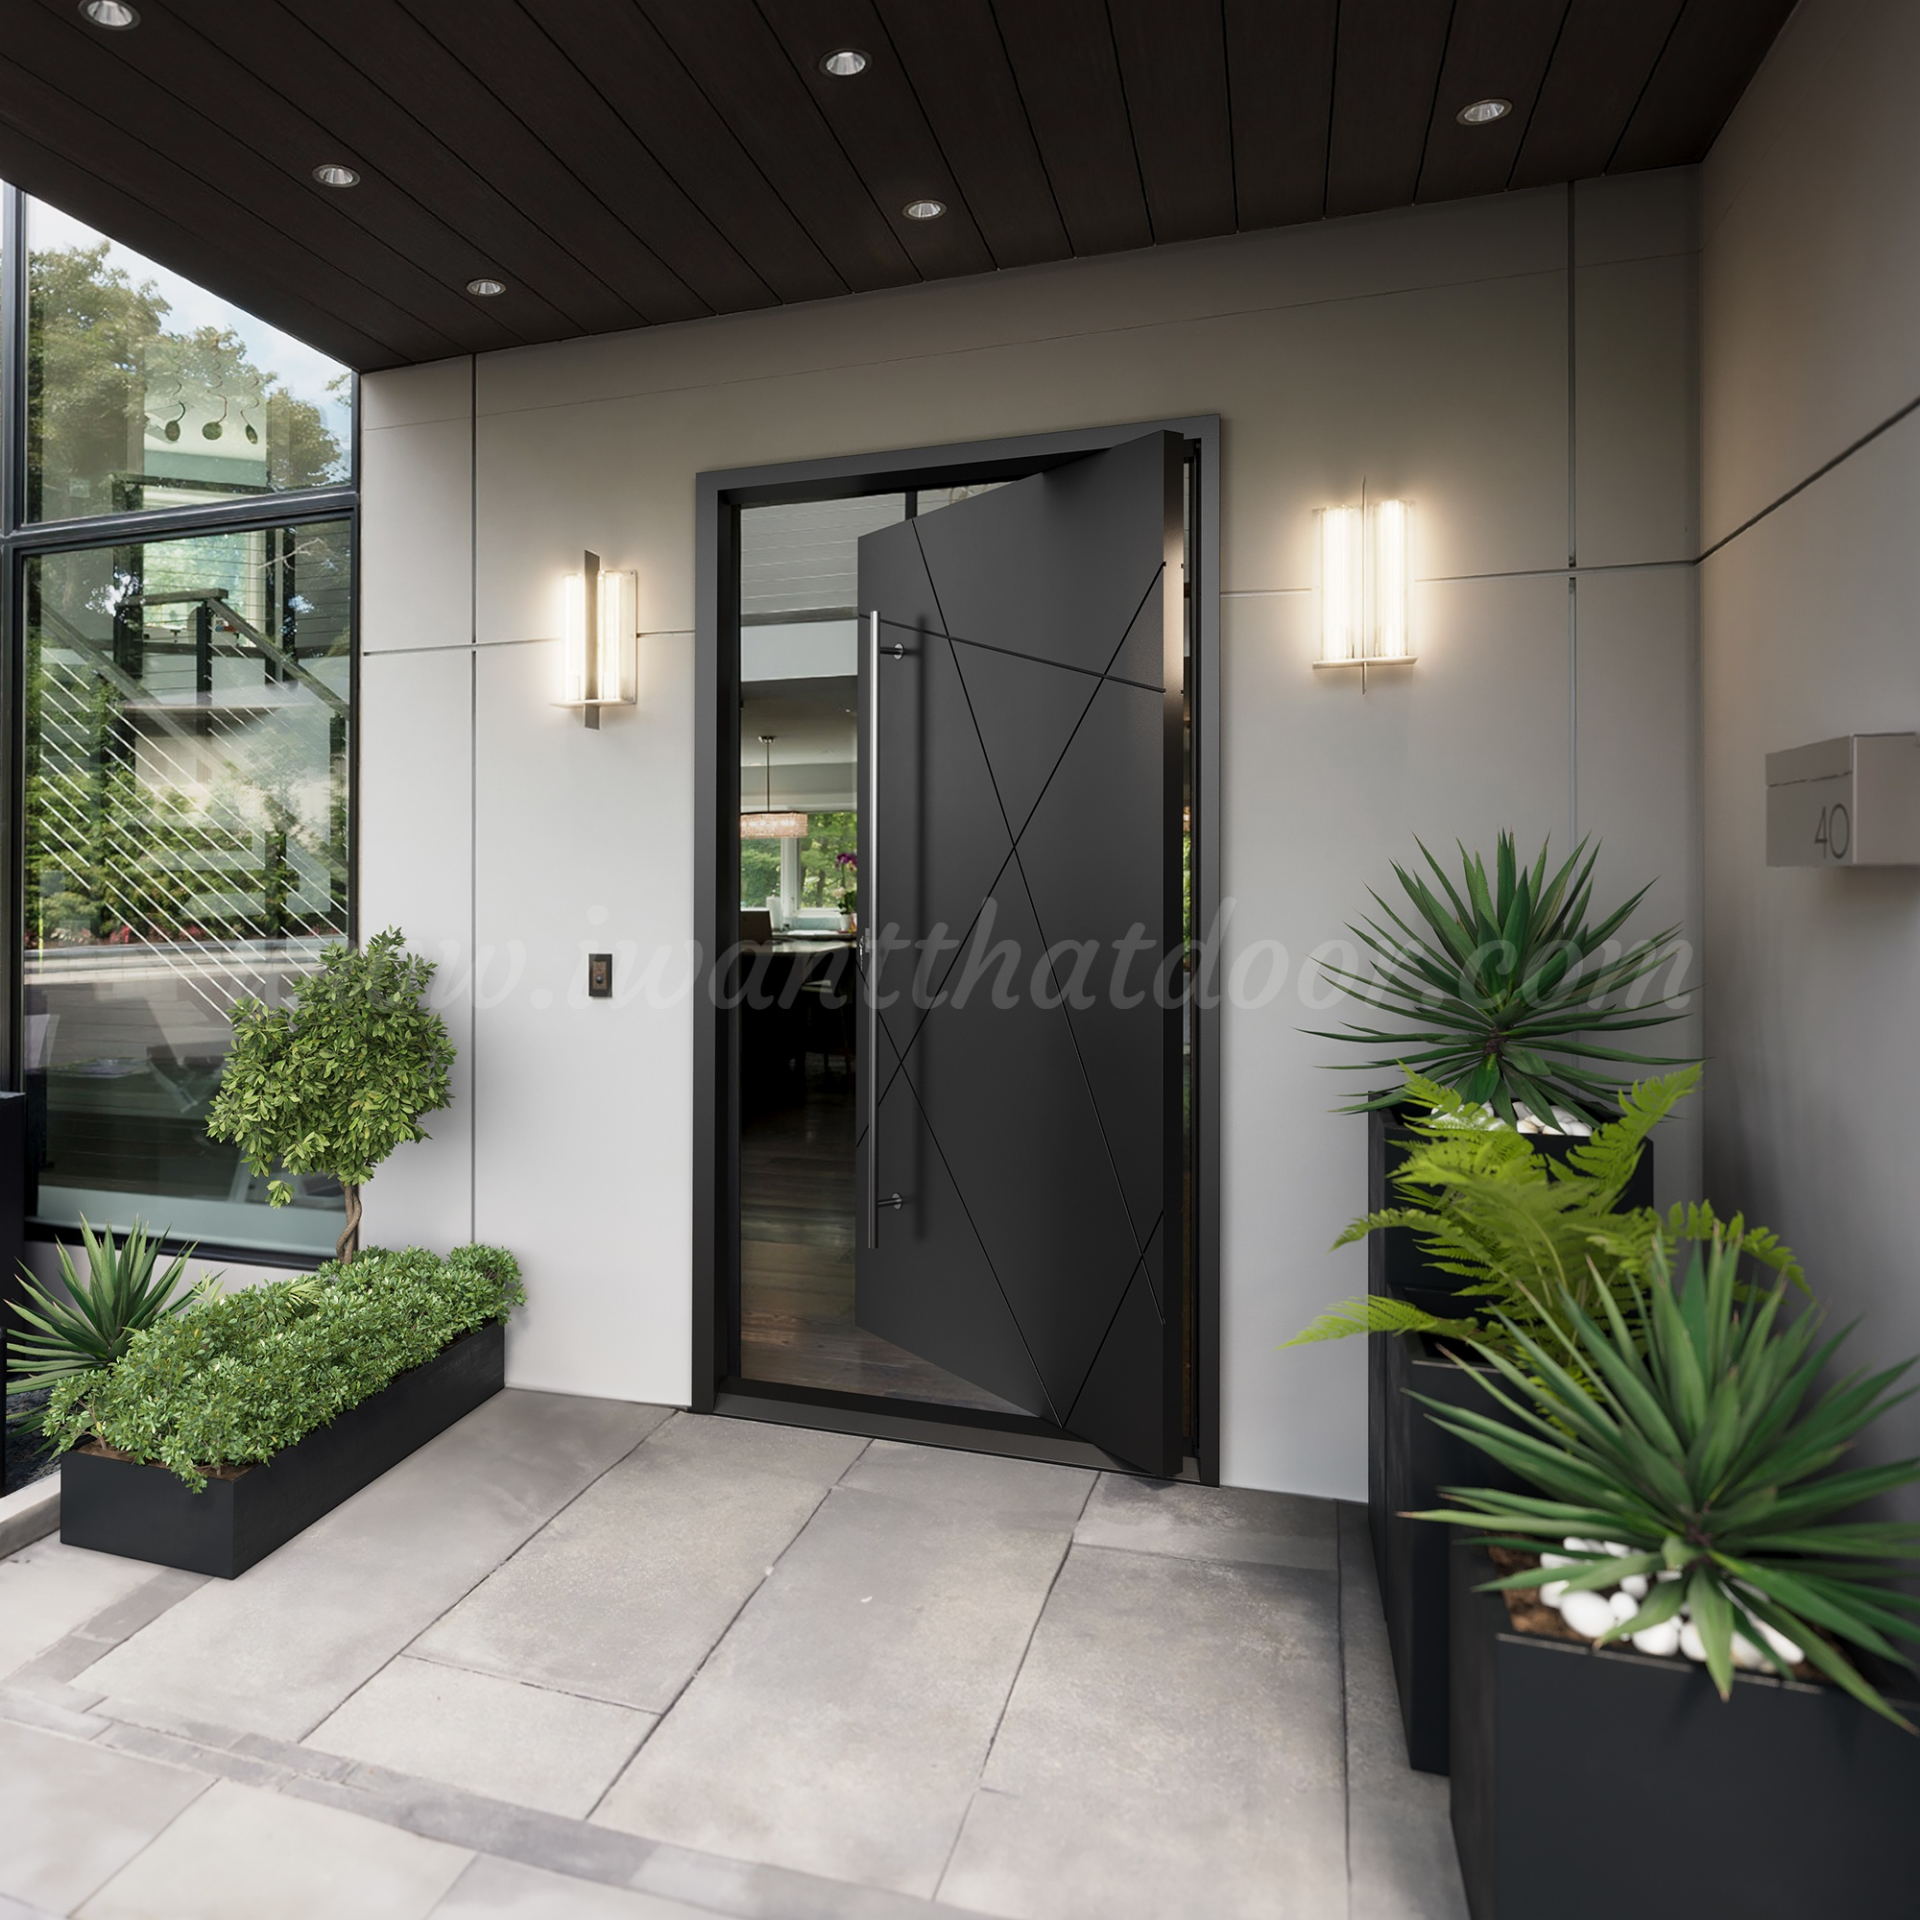 Custom pivot door from Universal Iron Doors installed in a luxury home